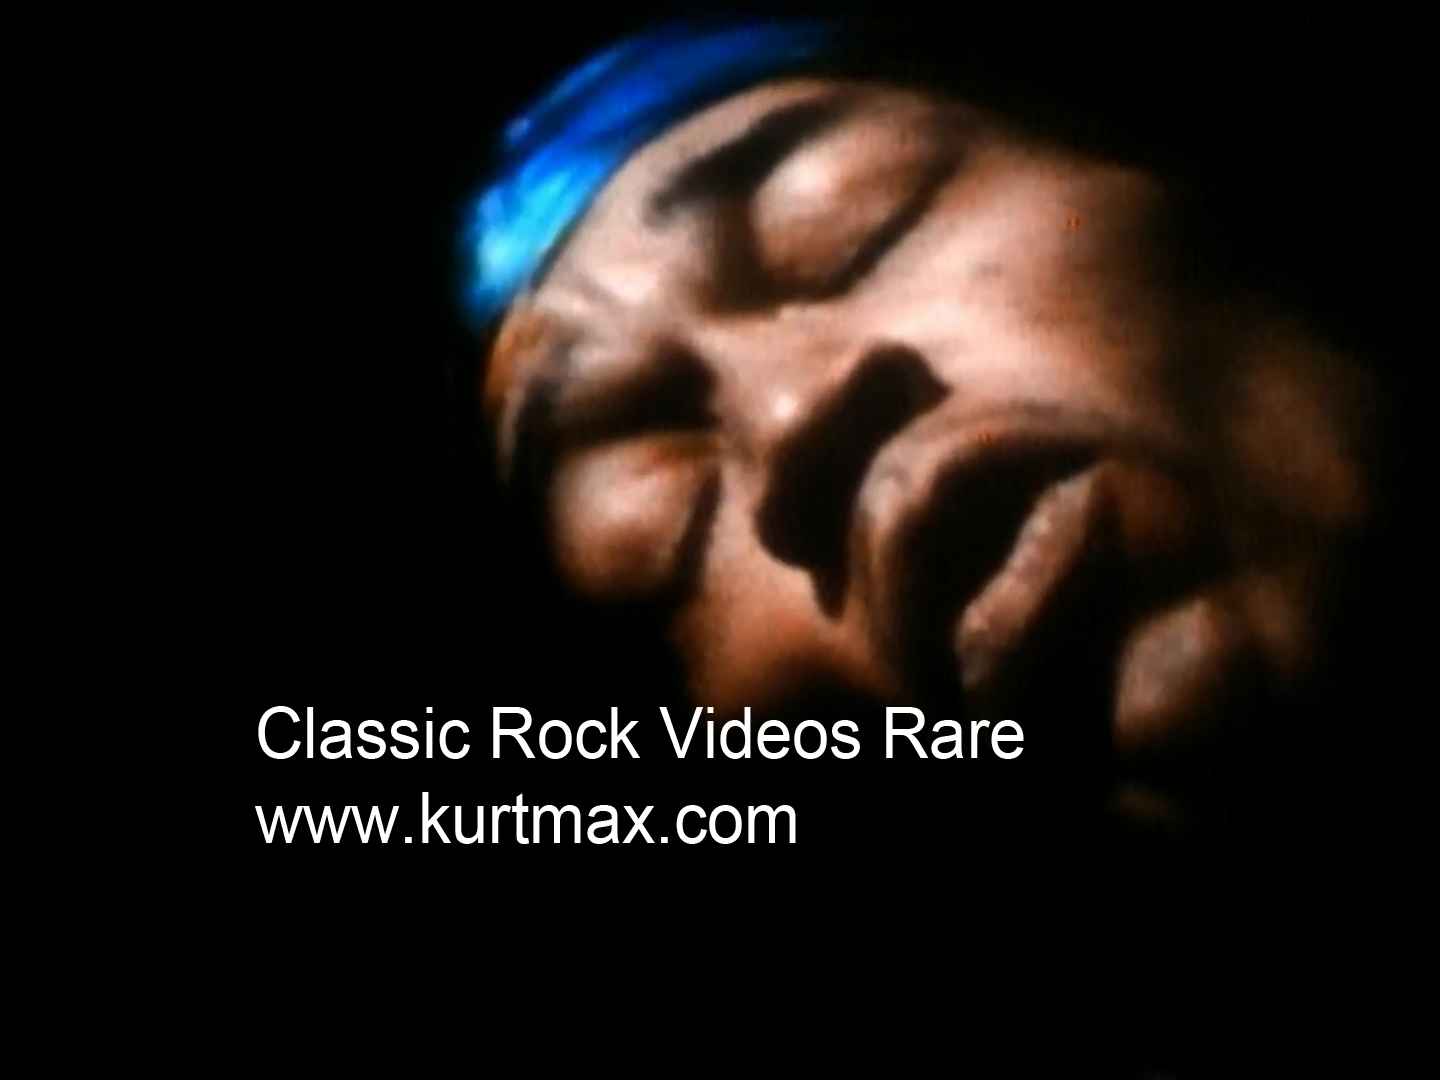 Classic Rock Video Rare FB icon 02